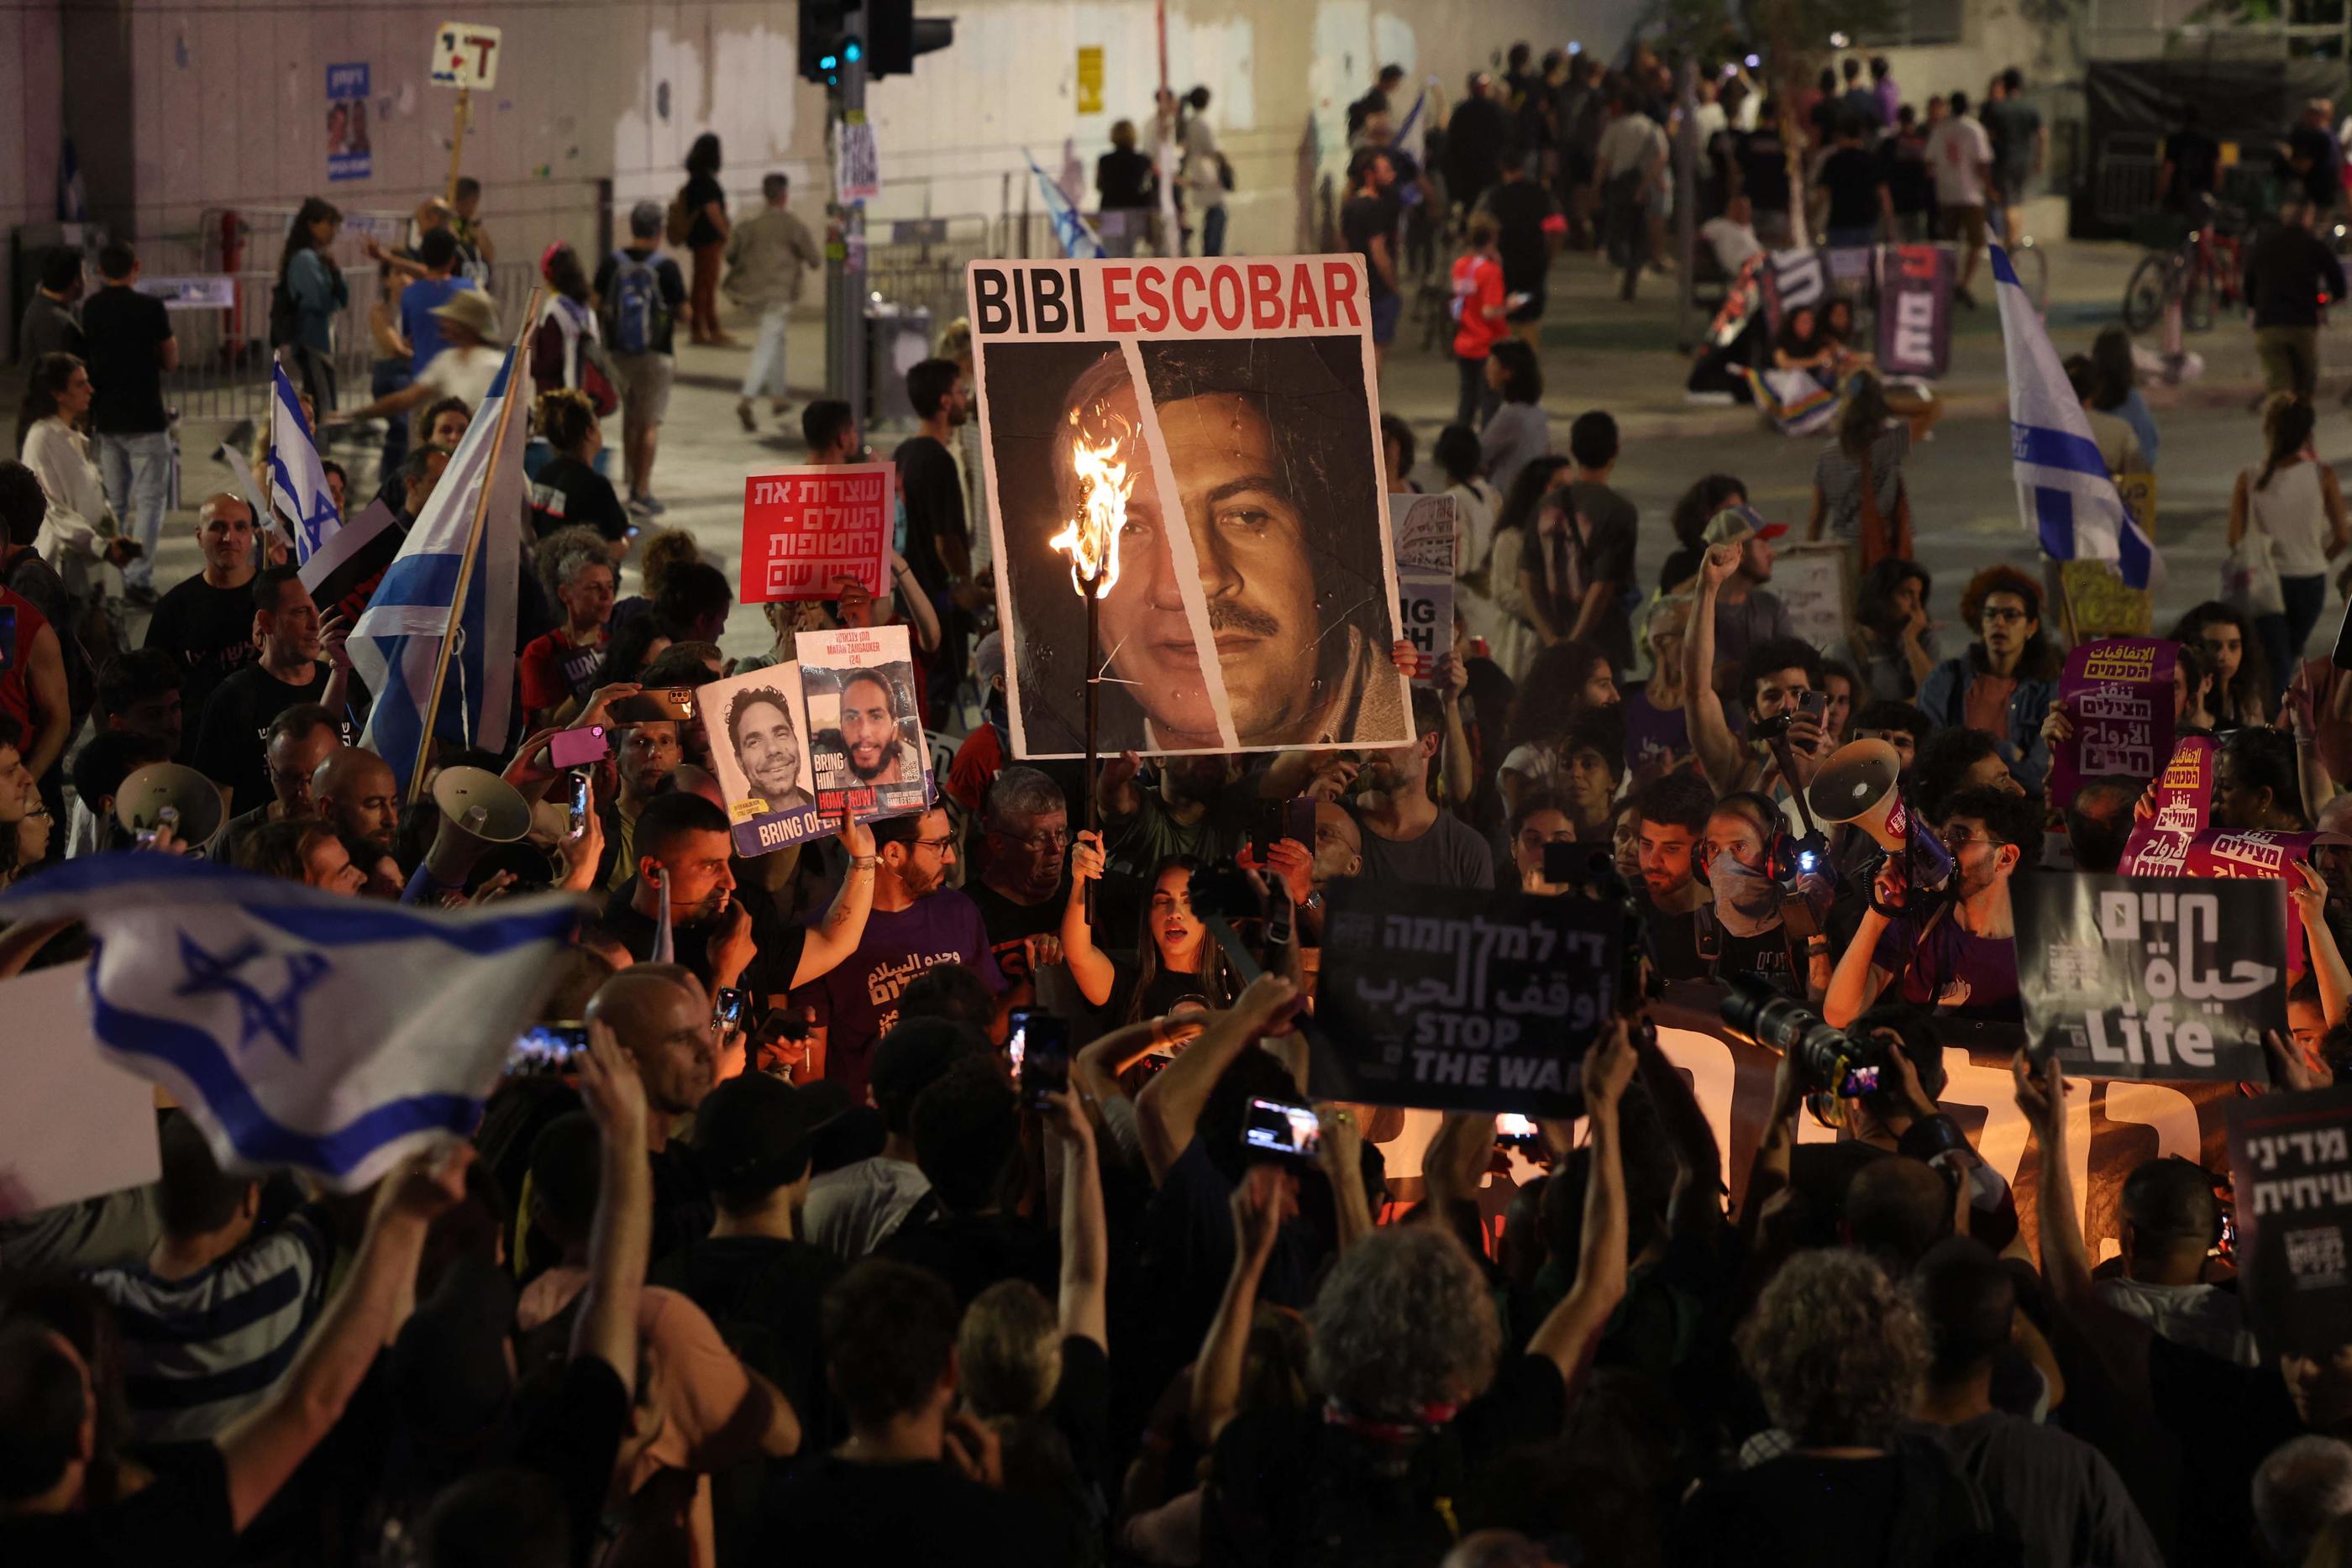 Des milliers de manifestants se sont rassemblés samedi soir à Tel-Aviv et à Jérusalem pour appeler à la libération des otages du Hamas, et contester les actions du gouvernement de Netanyahou. AFP/Ahmad Gharabli